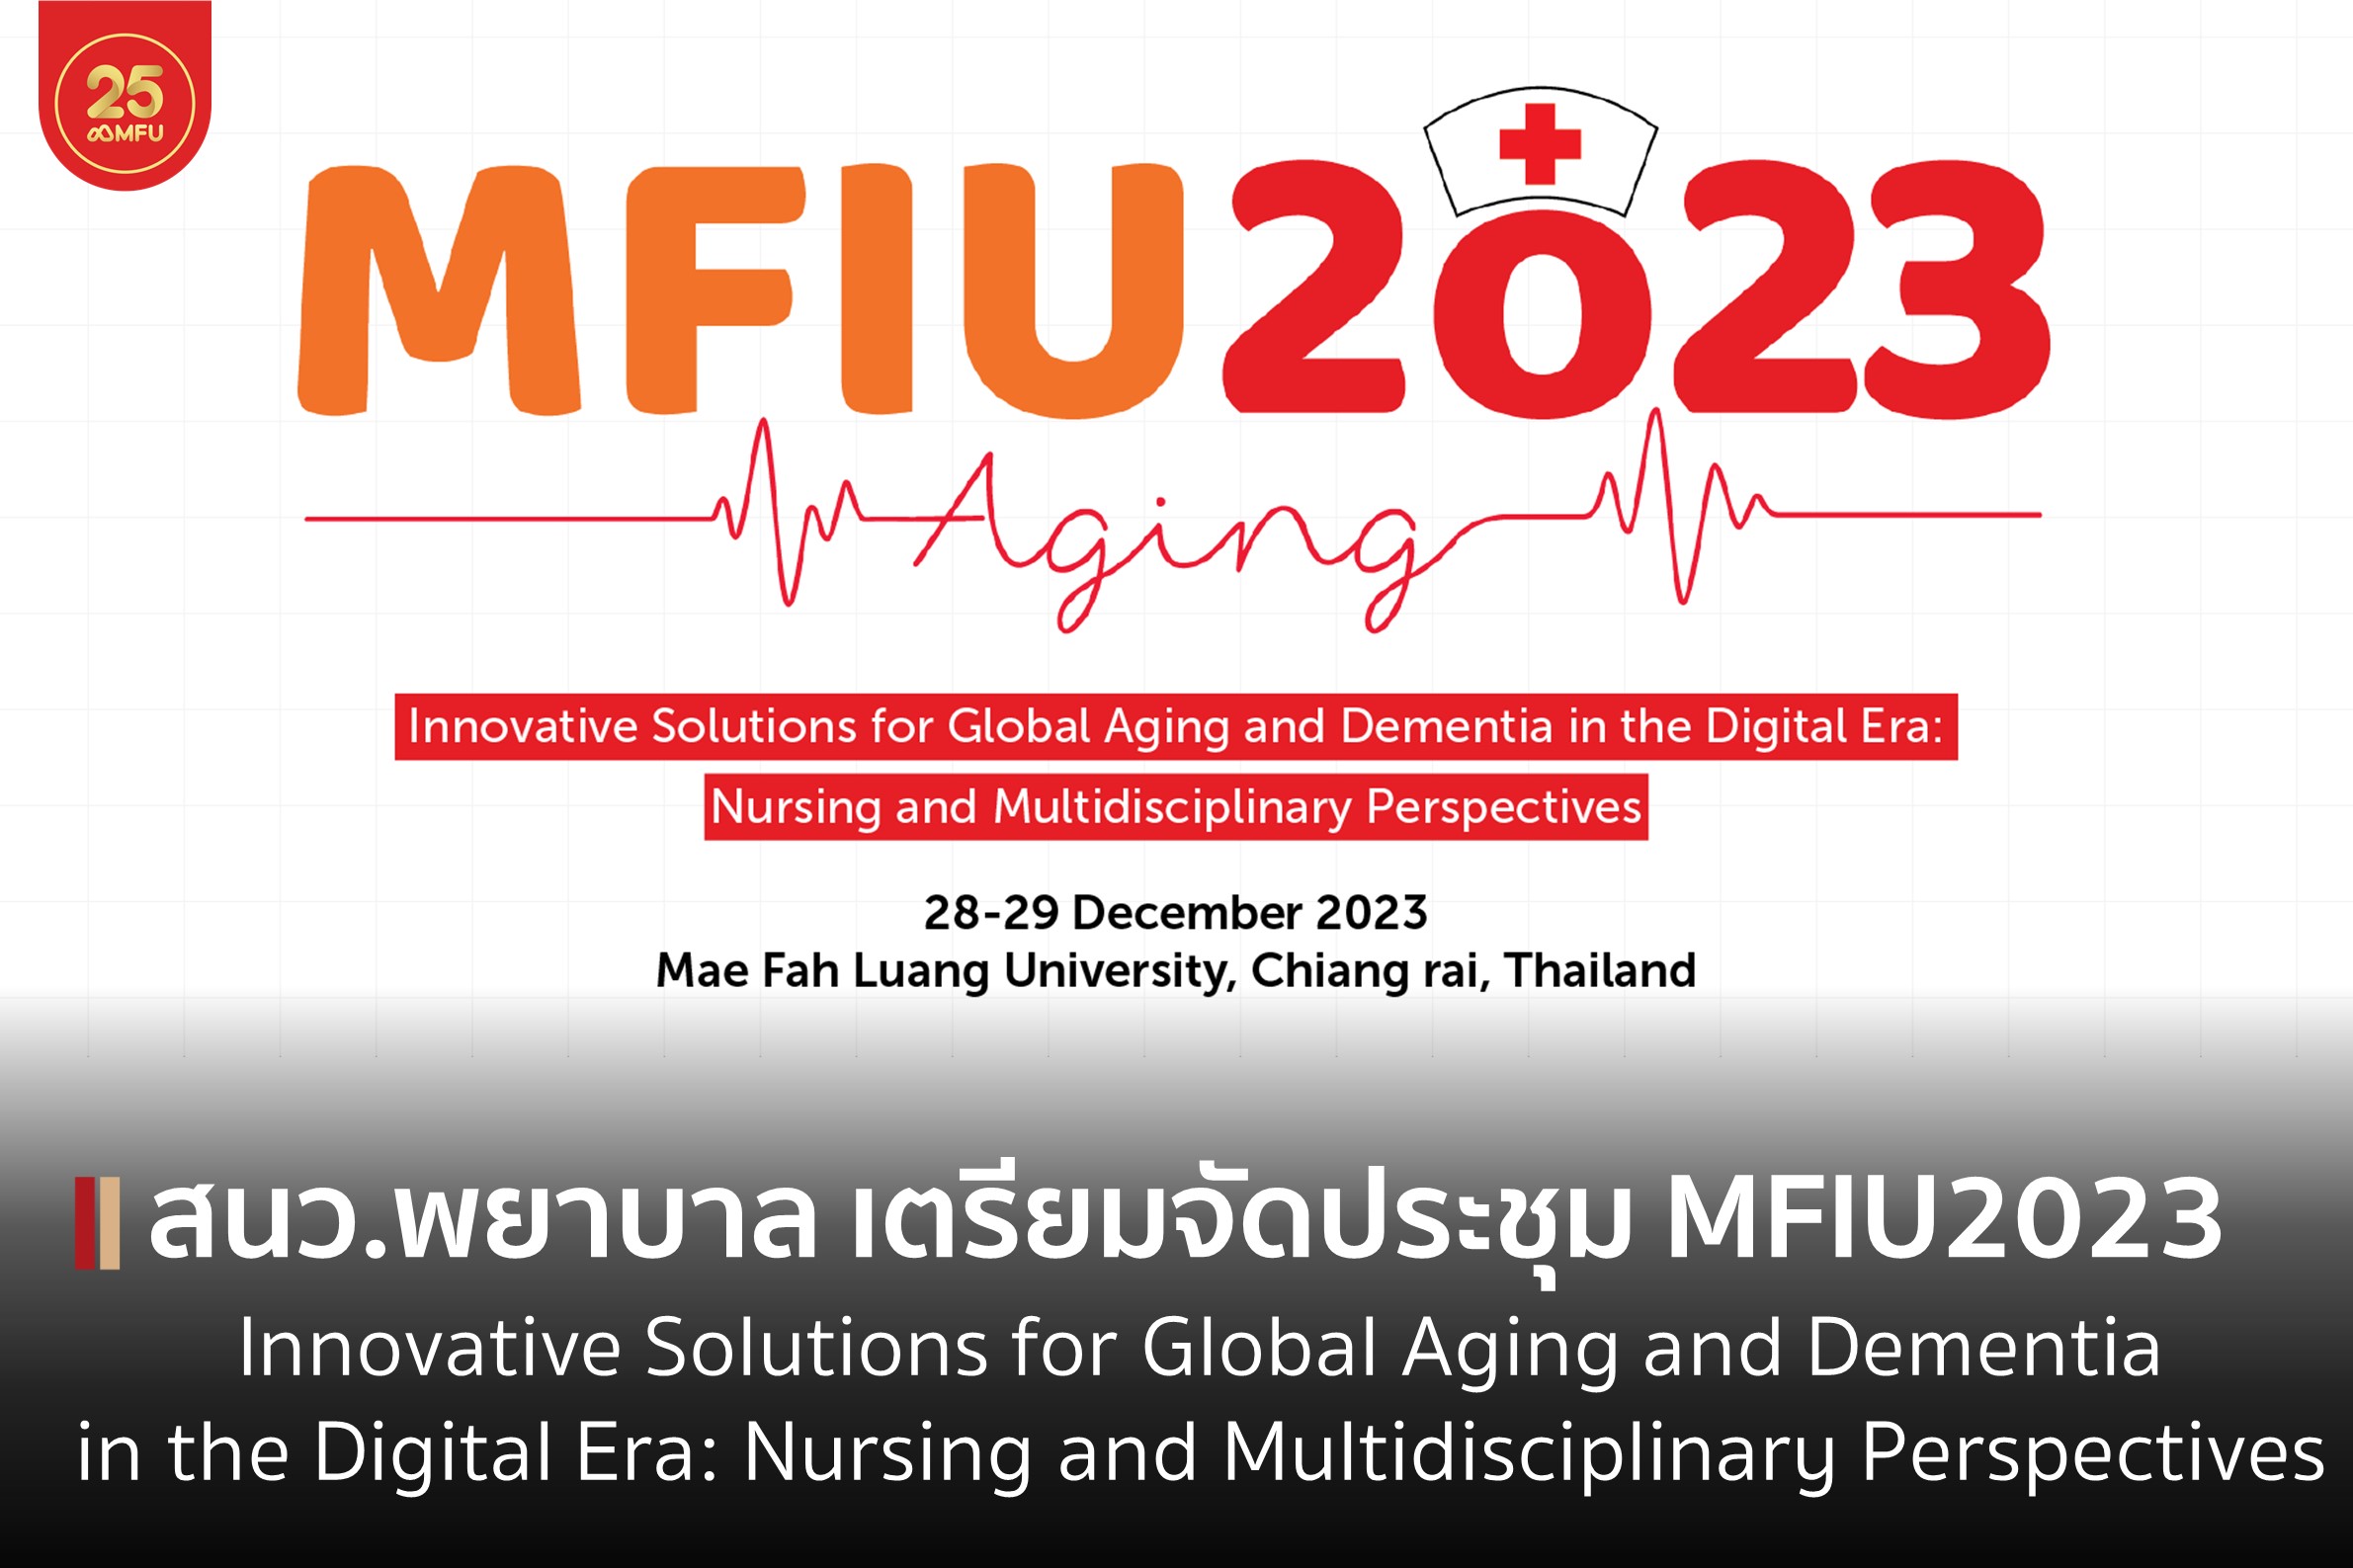 สำนักวิชาพยาบาลศาสตร์ เตรียมจัดประชุมวิชาการนานาชาติ MFIU2023: “Innovative Solutions for Global Aging and Dementia in the Digital Era: Nursing and Multidisciplinary Perspectives”